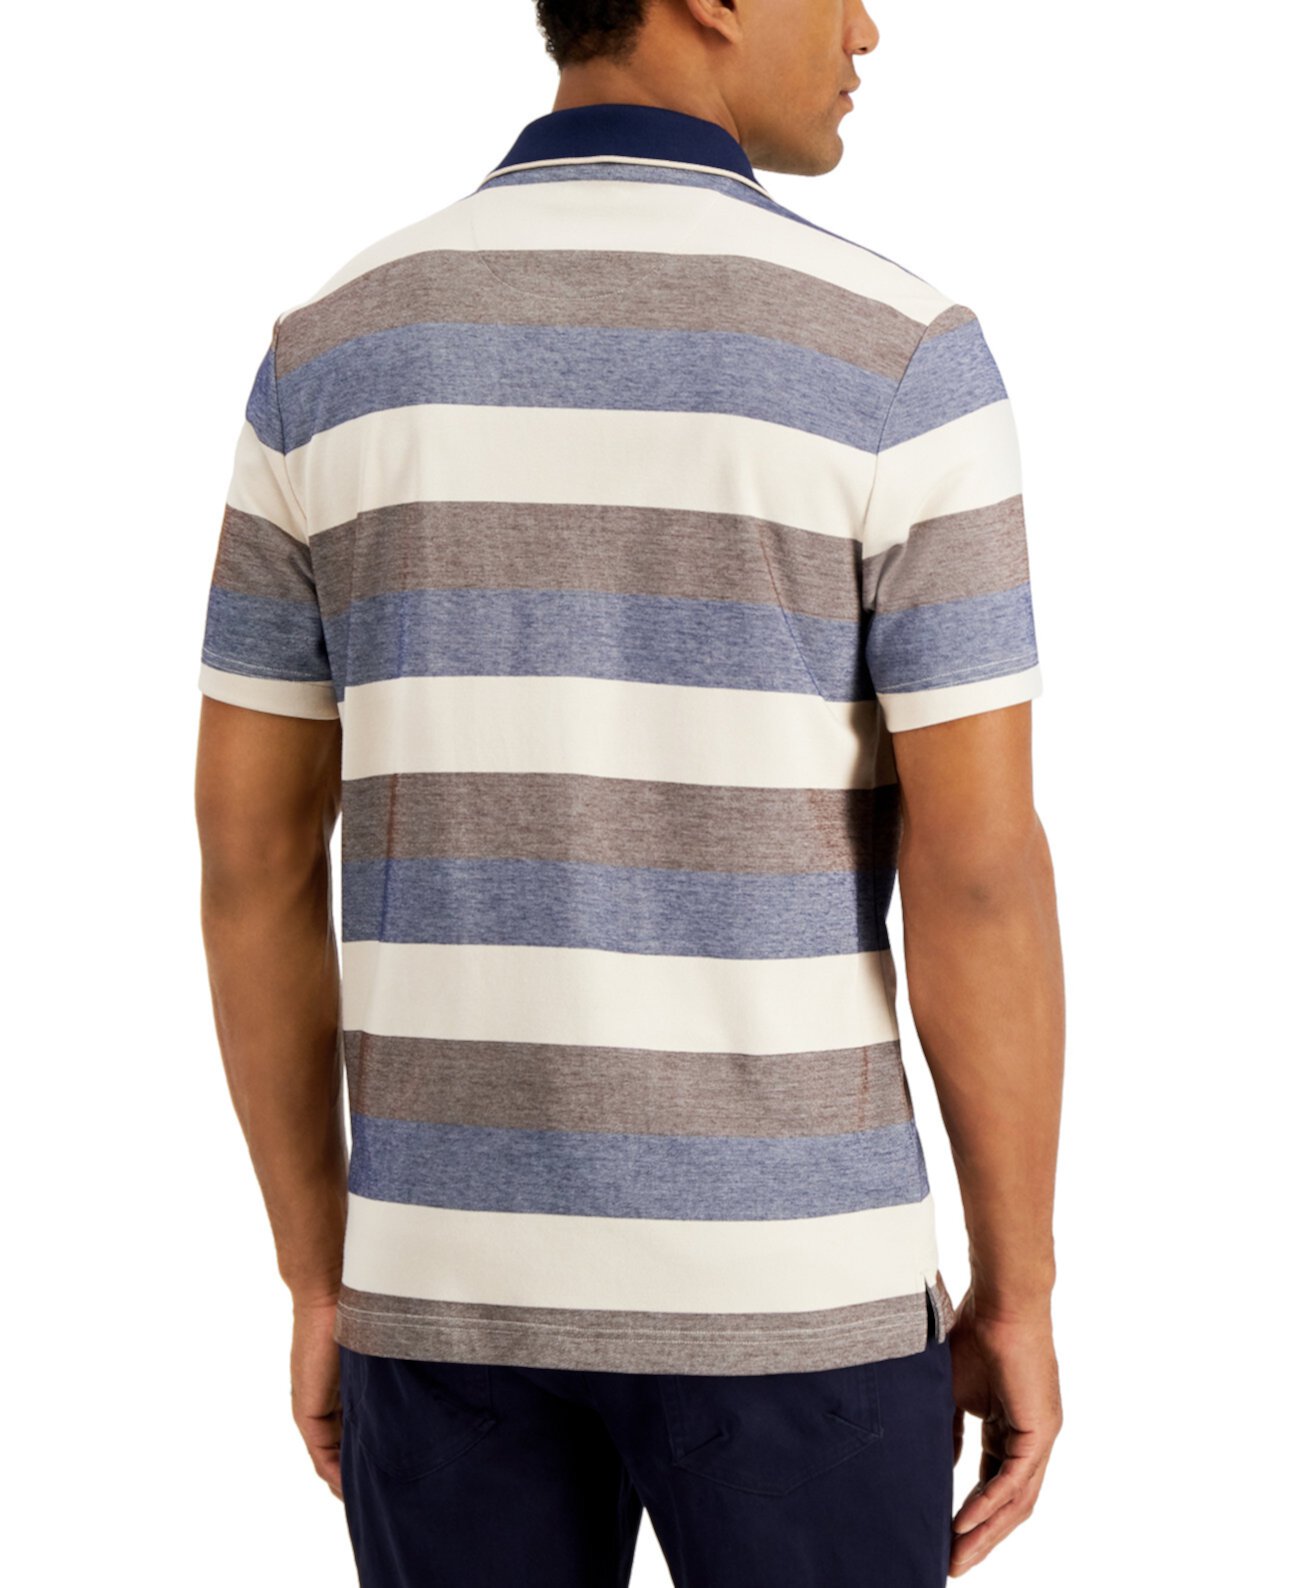 Мужская футболка-поло в полоску, созданная для Macy's Tasso Elba